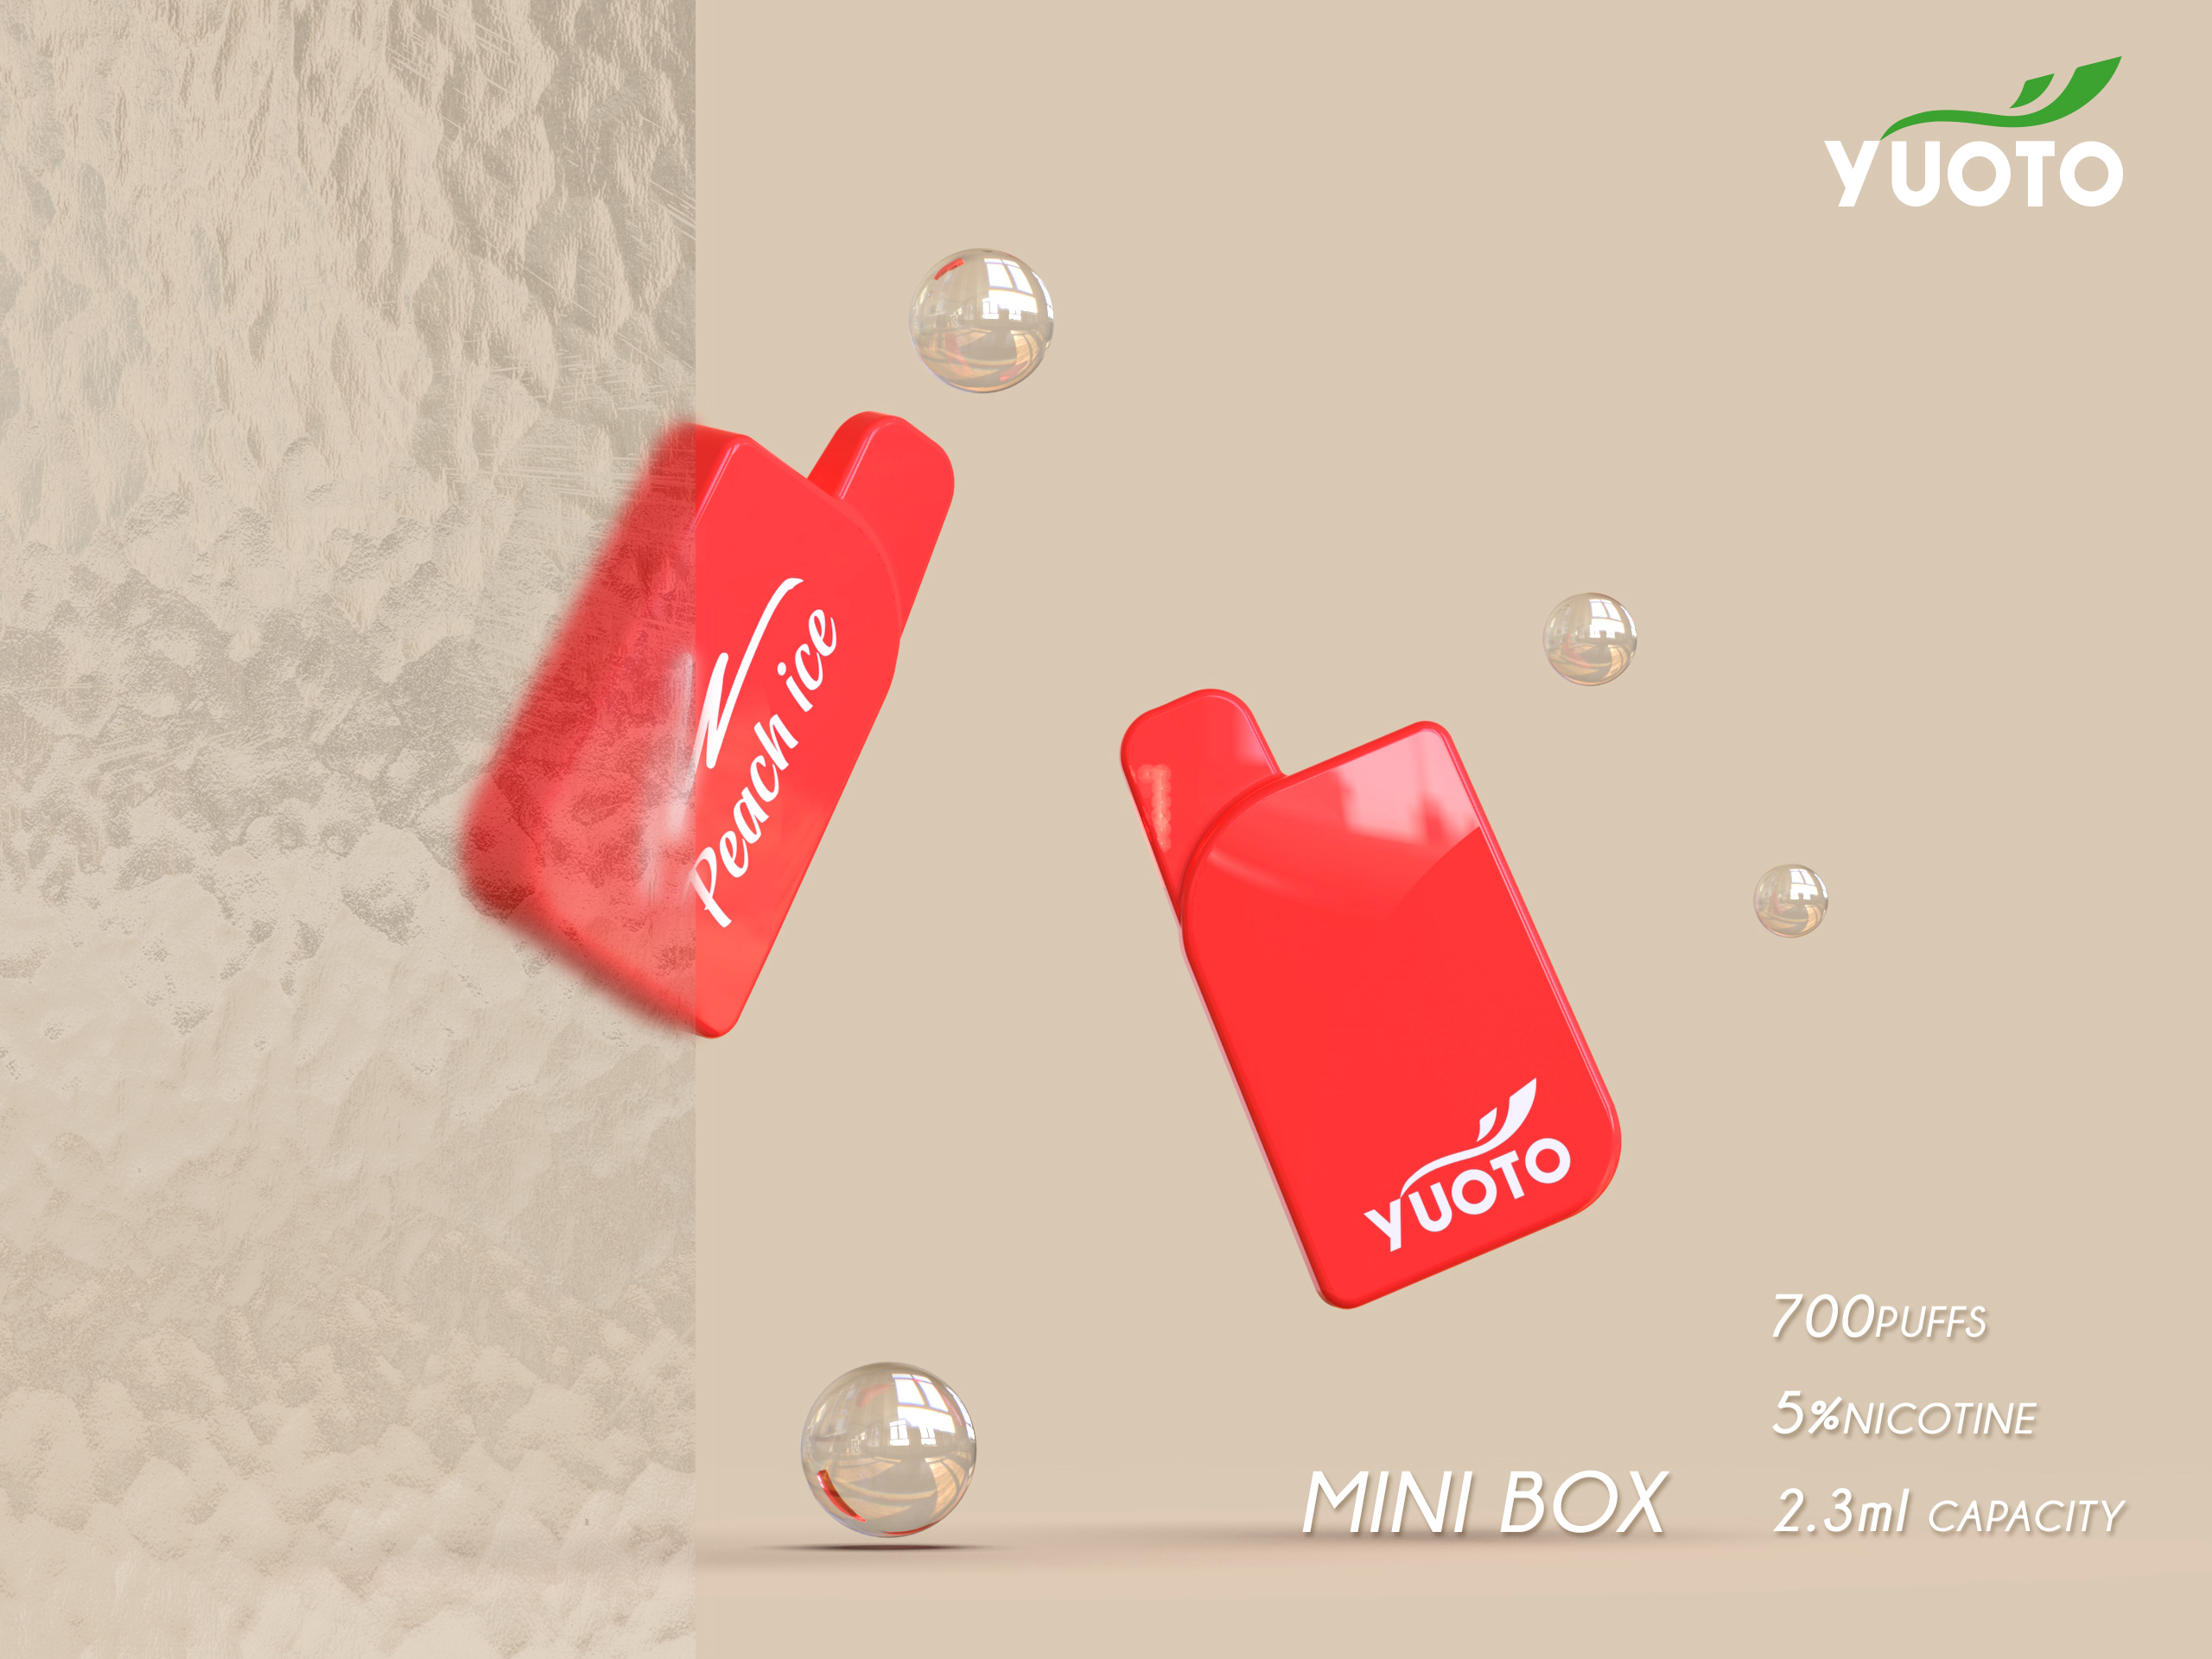 Yuoto mini box Disposable Vape Kit SPECIFICATION